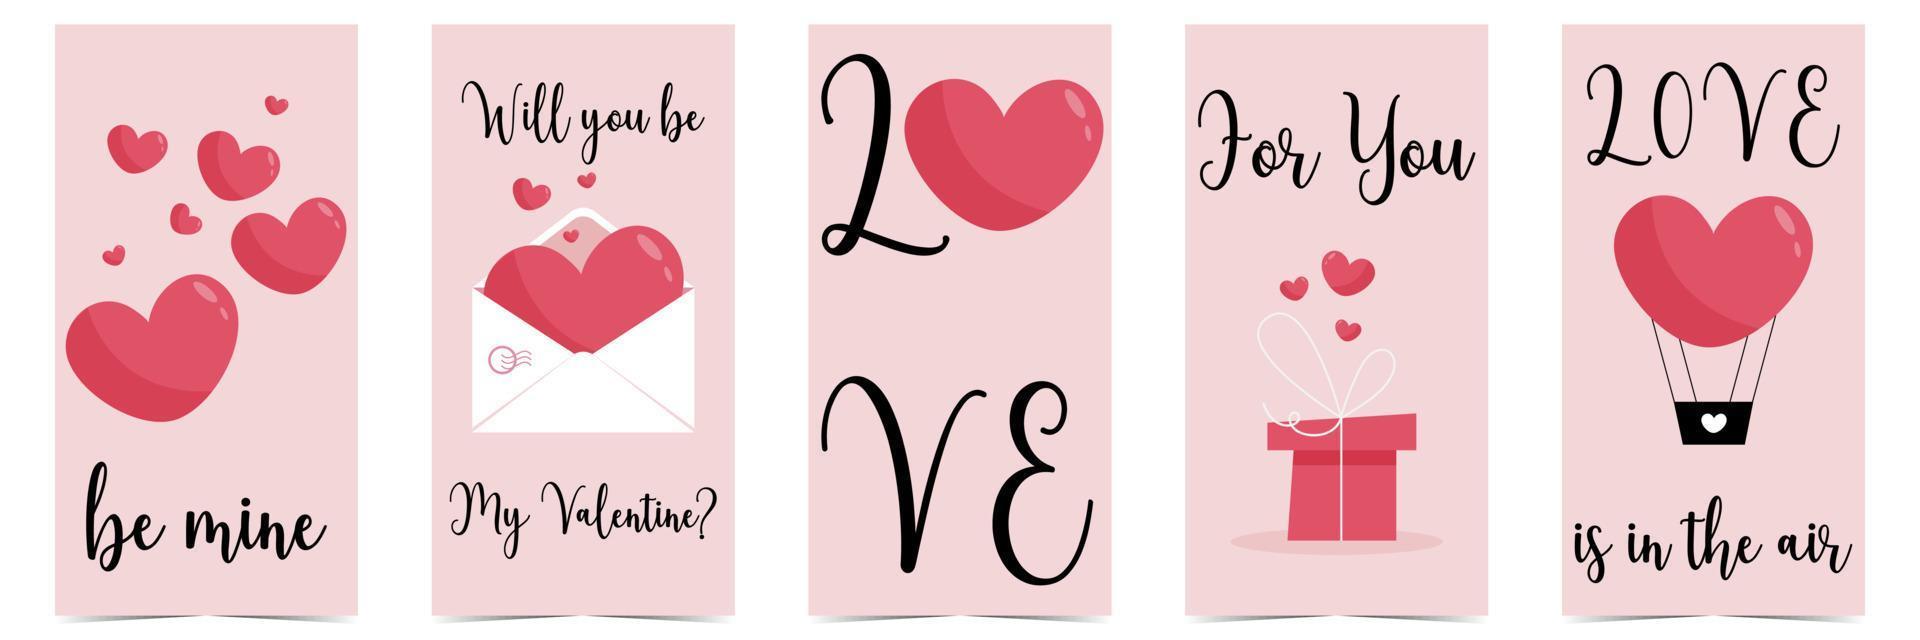 samling av alla hjärtans dag-vykort med röda ballonghjärtan, presentförpackning och romantisk kärlekstext. redigerbar vektorillustration för inbjudan, presentkort, webbplats, kampanjbanner eller flygblad. vektor